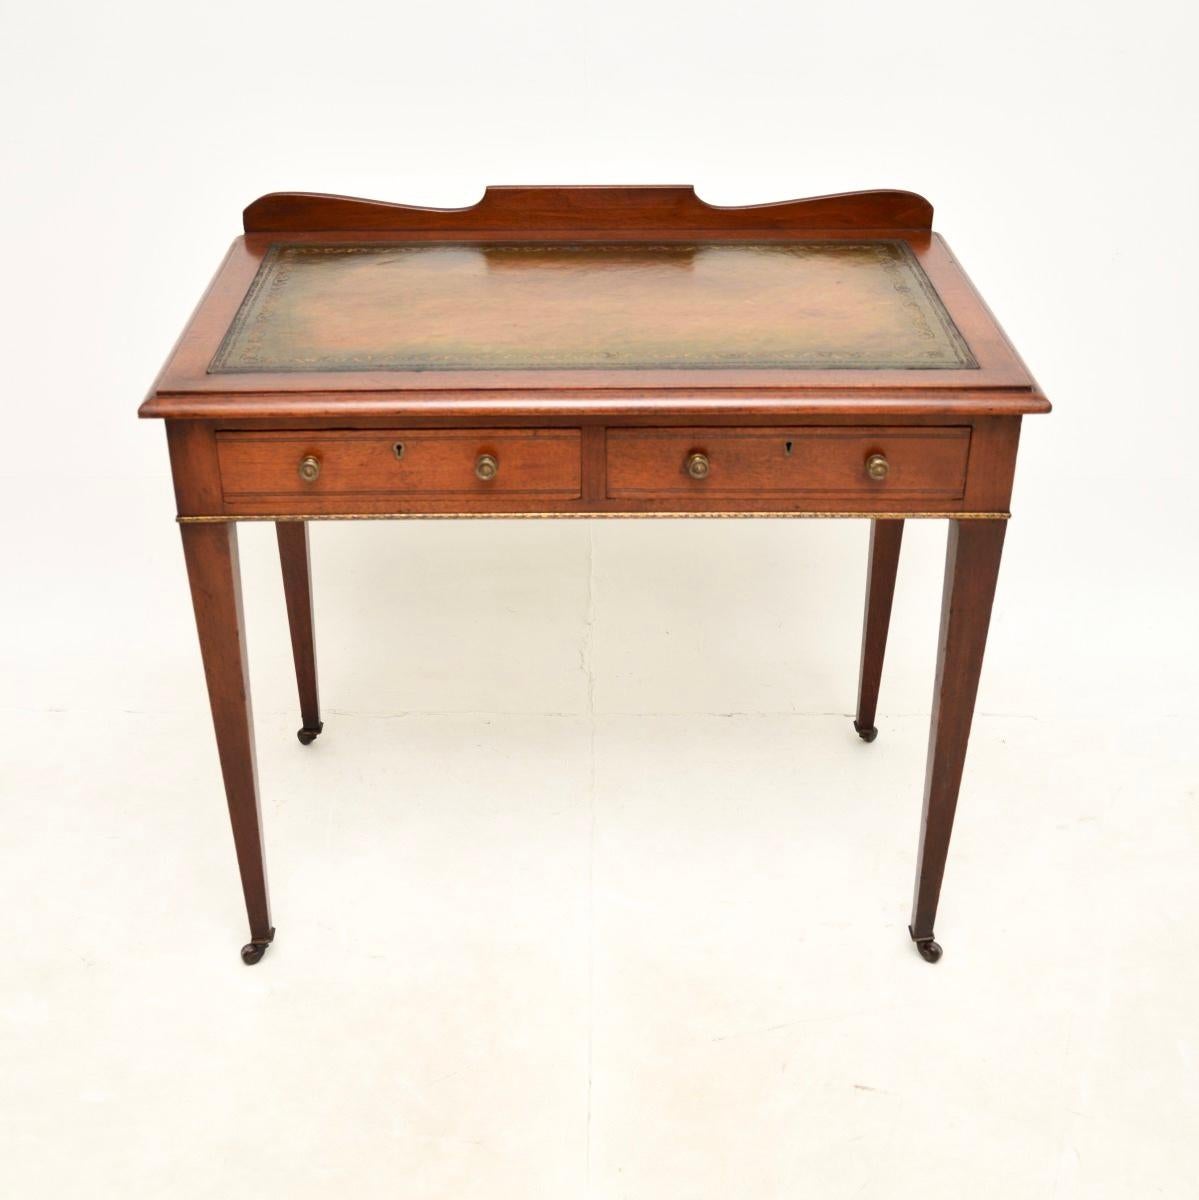 Un joli bureau / table à écrire ancien de style édouardien, fabriqué en Angleterre et datant d'environ la période 1890-1910.

Il est d'une superbe qualité, avec un design beau et élégant. Le plateau est doté d'une surface d'écriture en cuir avec des